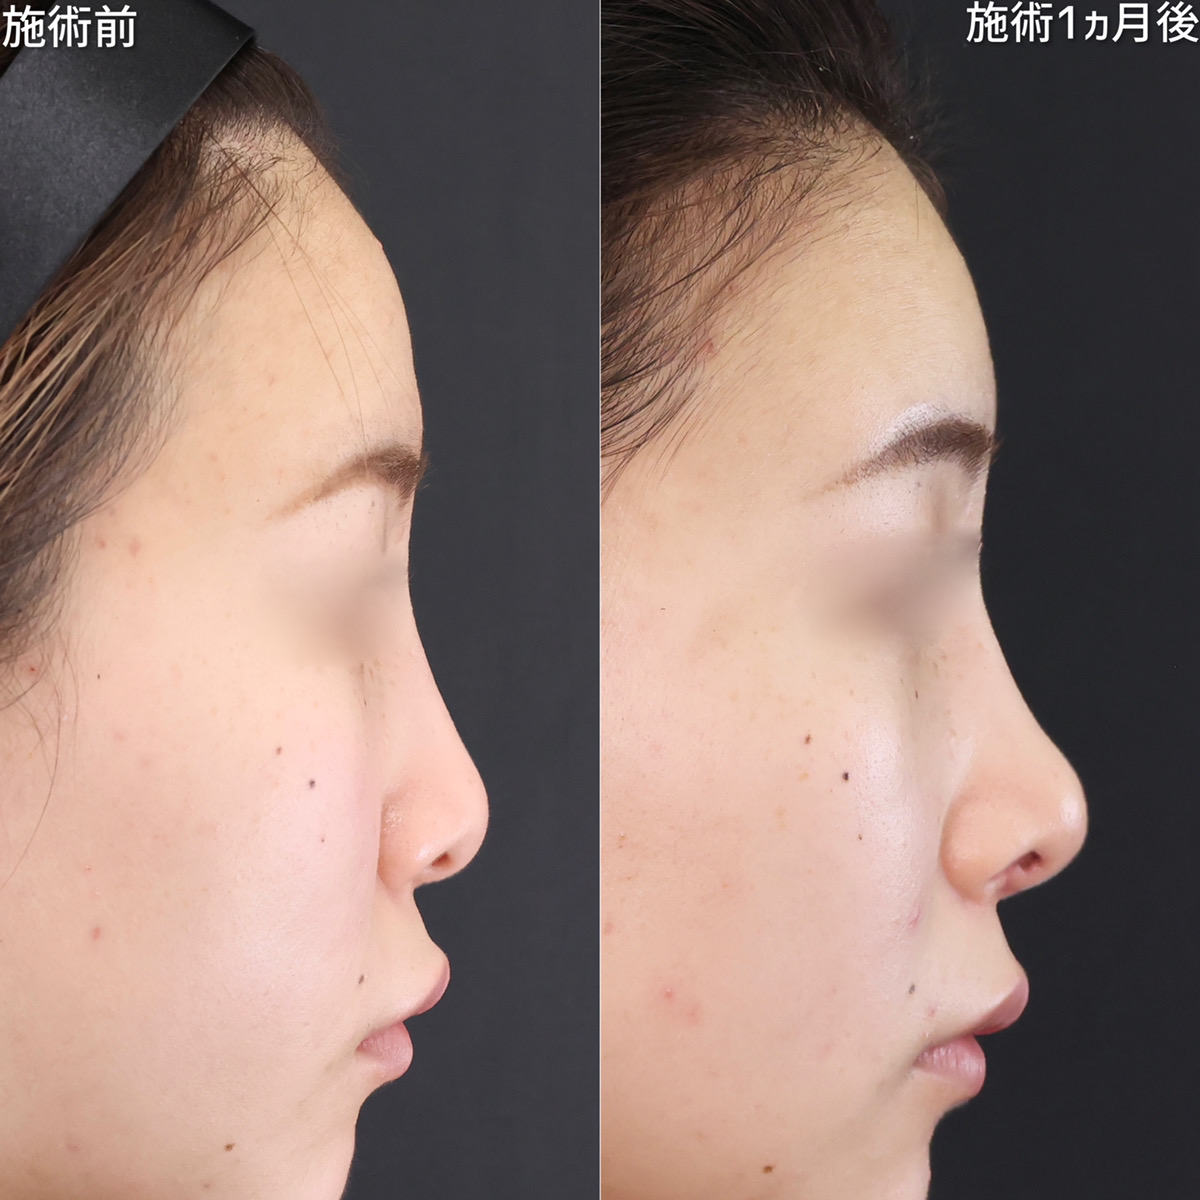 鼻尖注射玻尿酸 | 日本領先的美容、健康與再生醫學診所 | Bianca Ginza